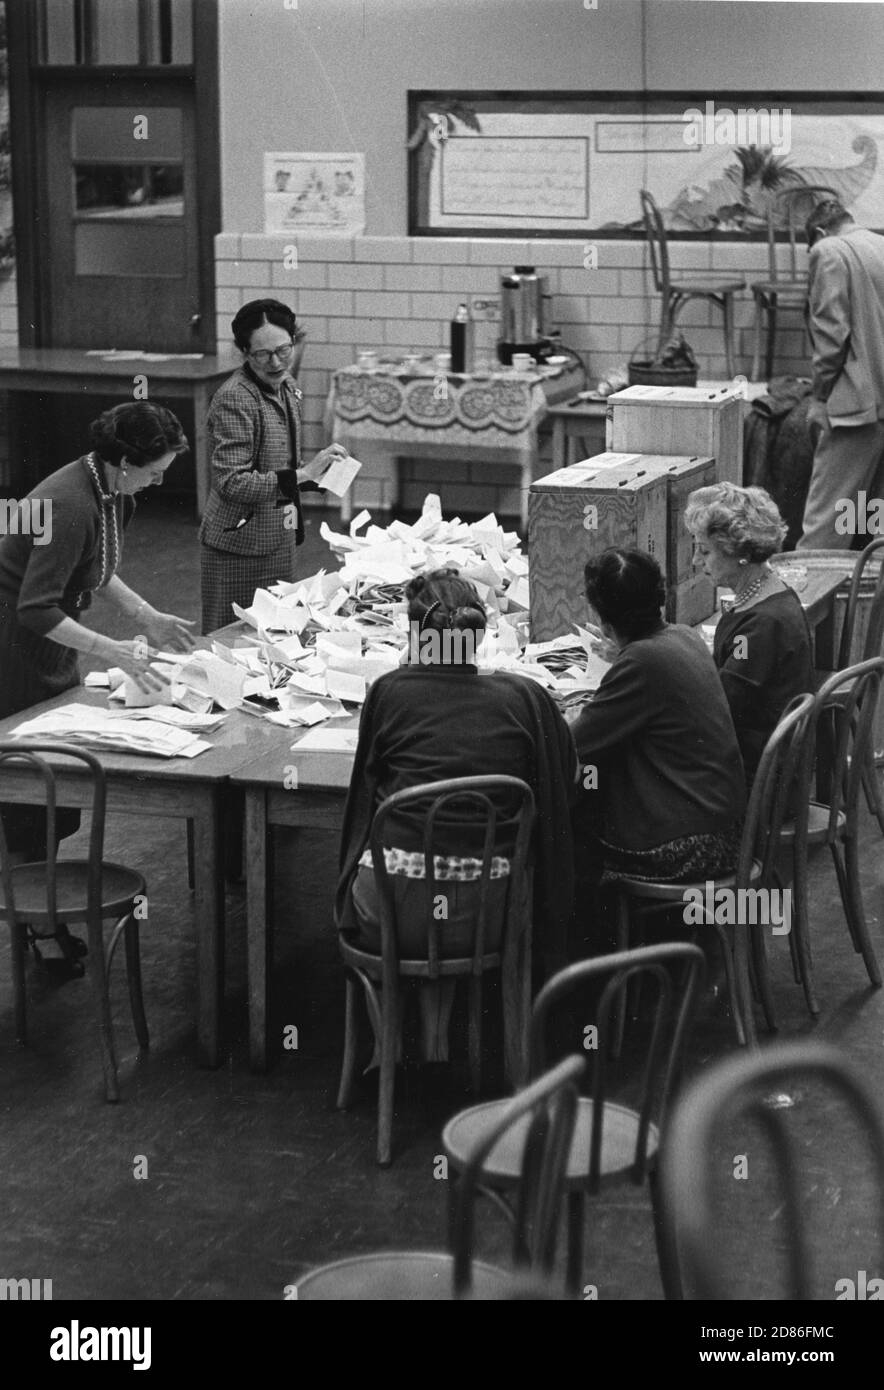 Les fonctionnaires électoraux de l'arrondissement ouvrent les urnes et commencent le décompte des voix, Dunn Loring, va, 11/8/1960. (Photo d'Edwin Huffman/United States information Agency/RBM Vintage Images) Banque D'Images